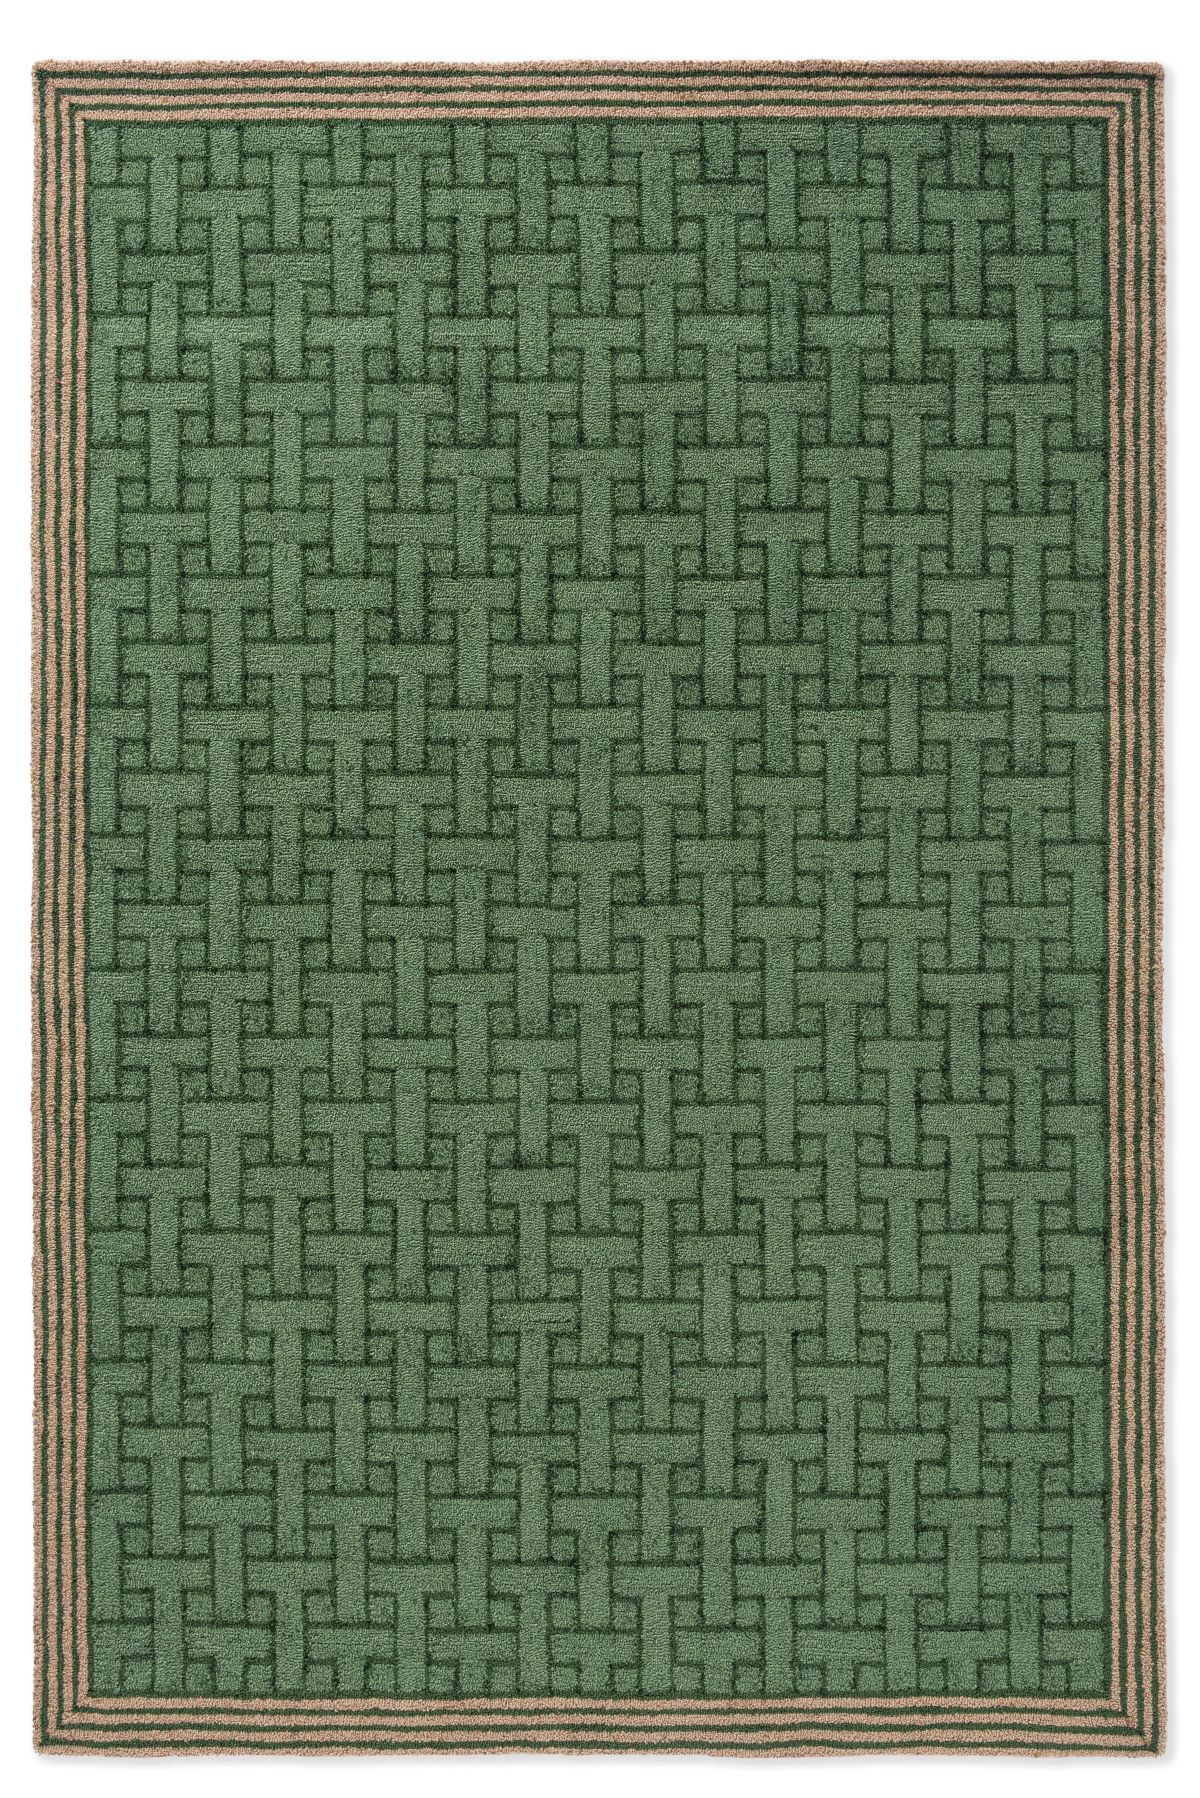 ted-baker-rug-monogram-jade-green-455807